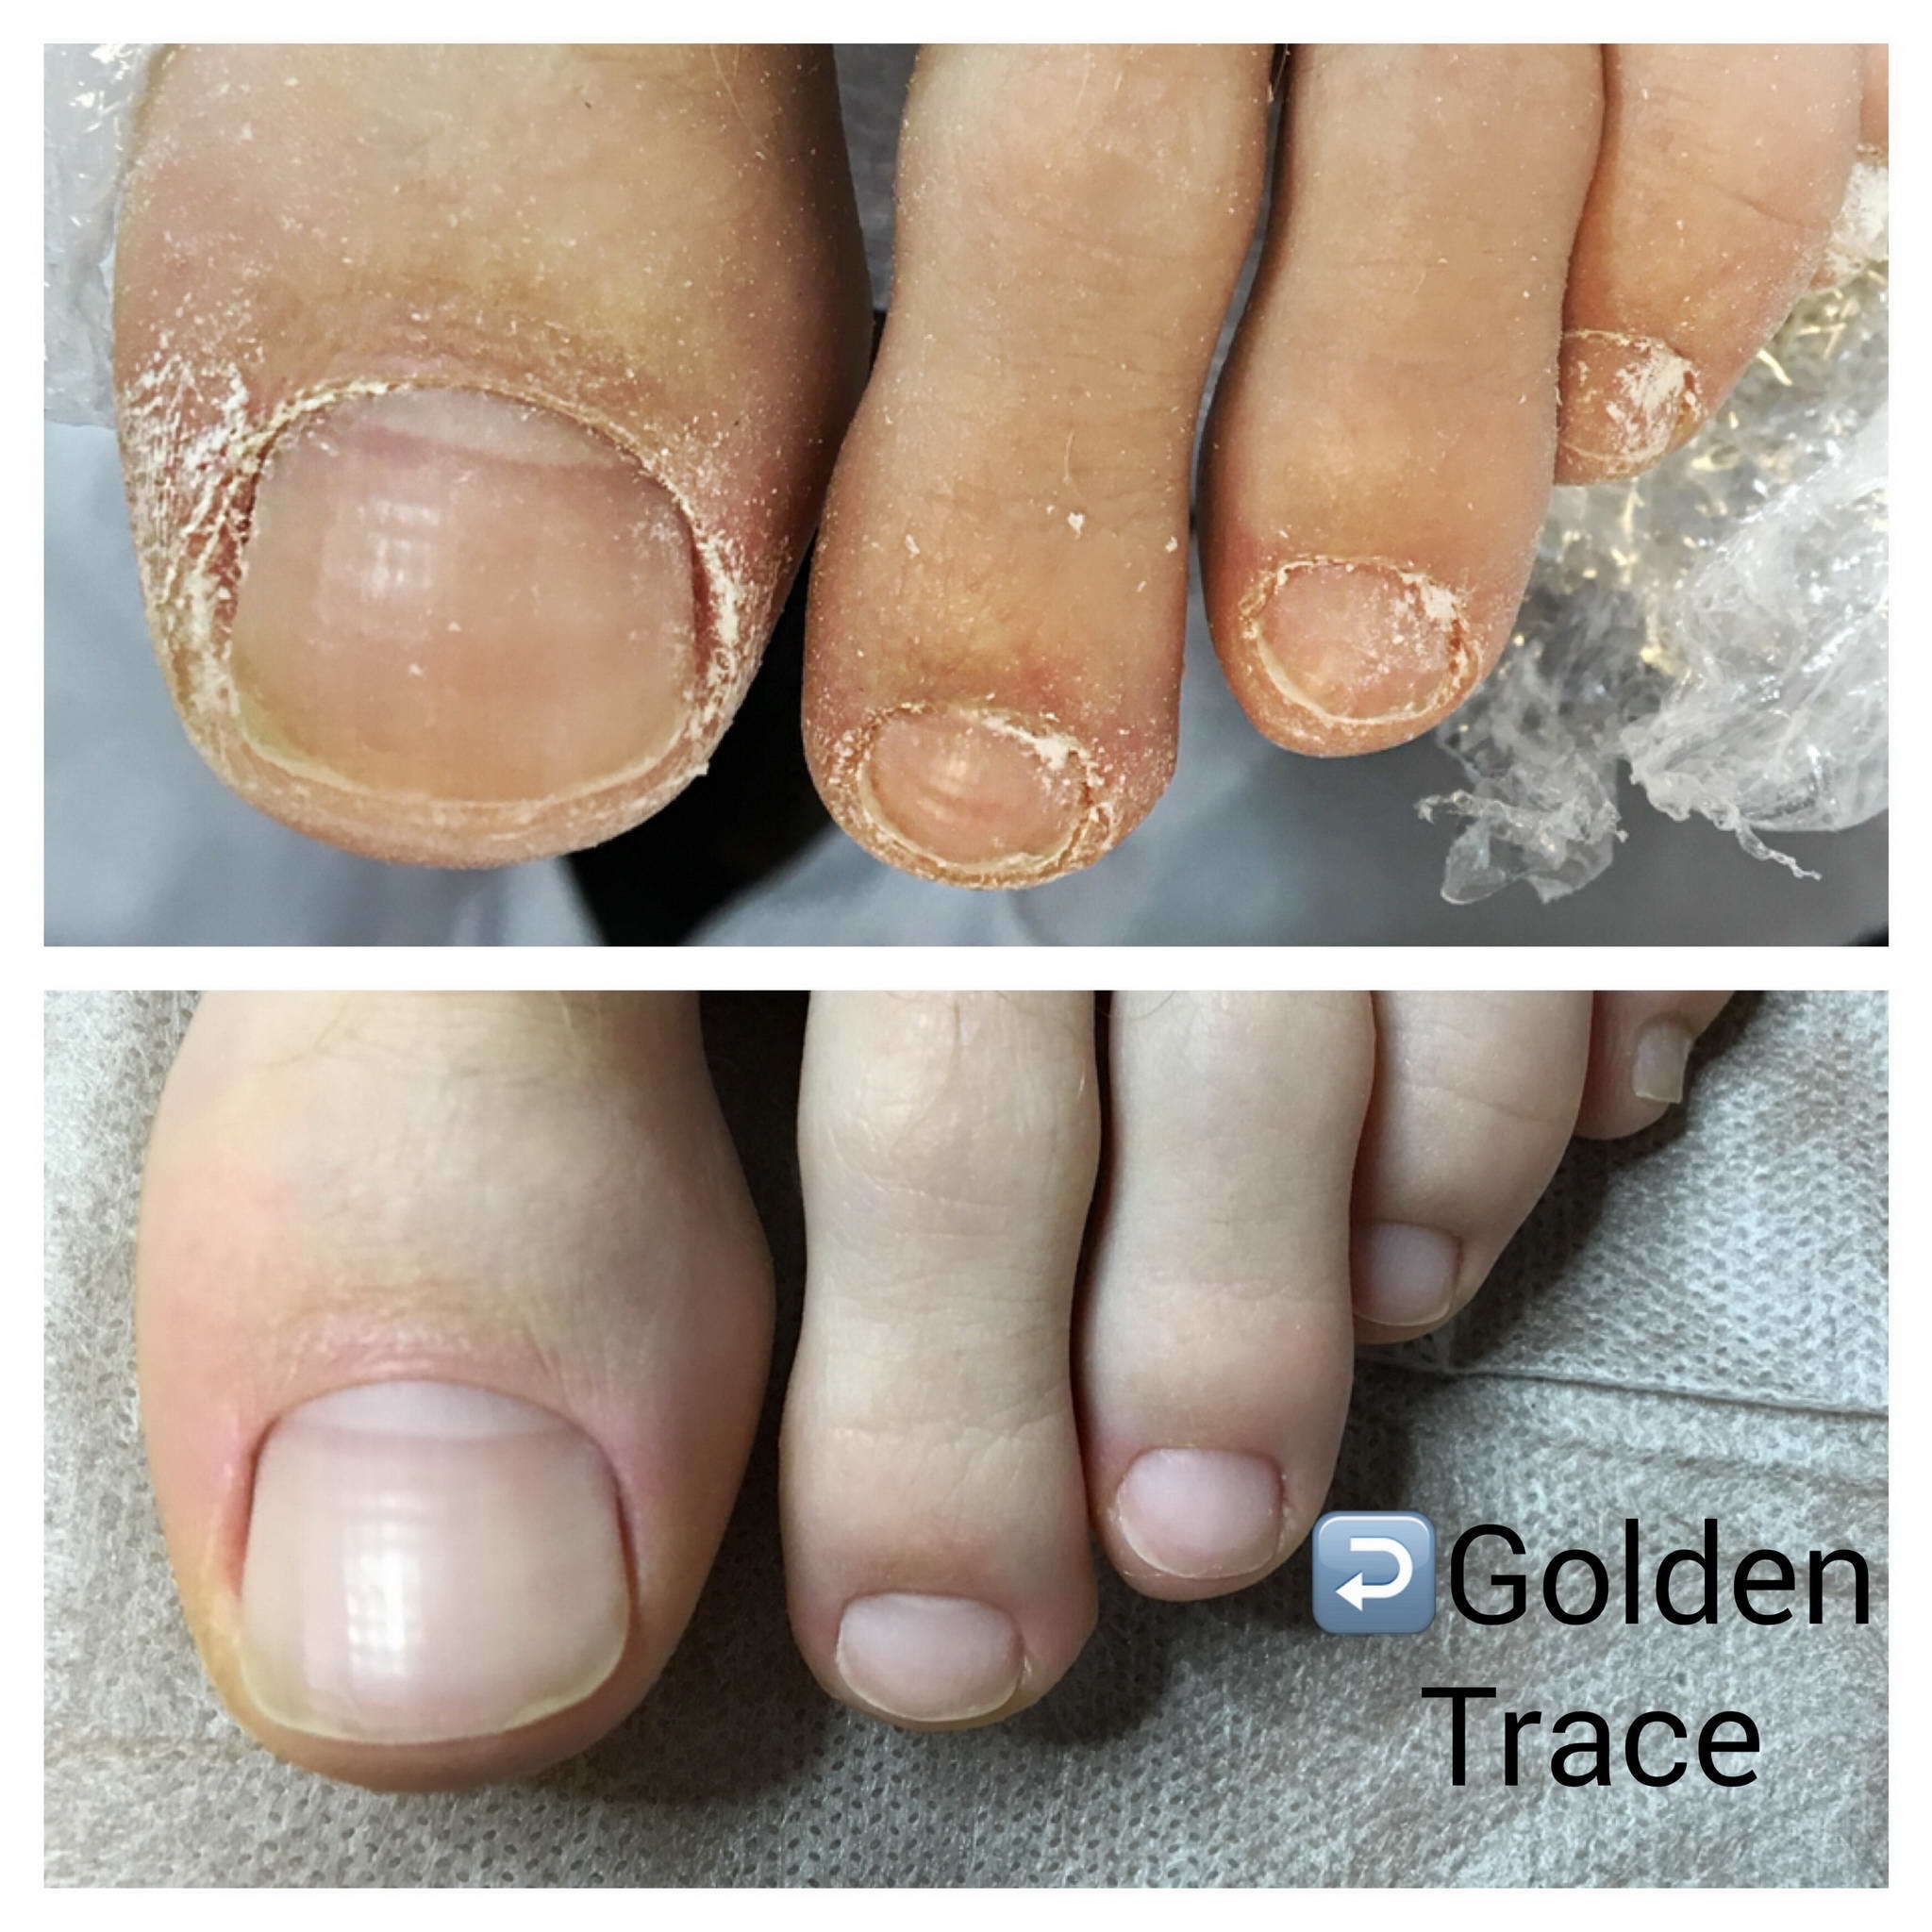 Проблемный педикюр. Ферментативный педикюр Golden Trace что это. Ногти до и после педикюра.